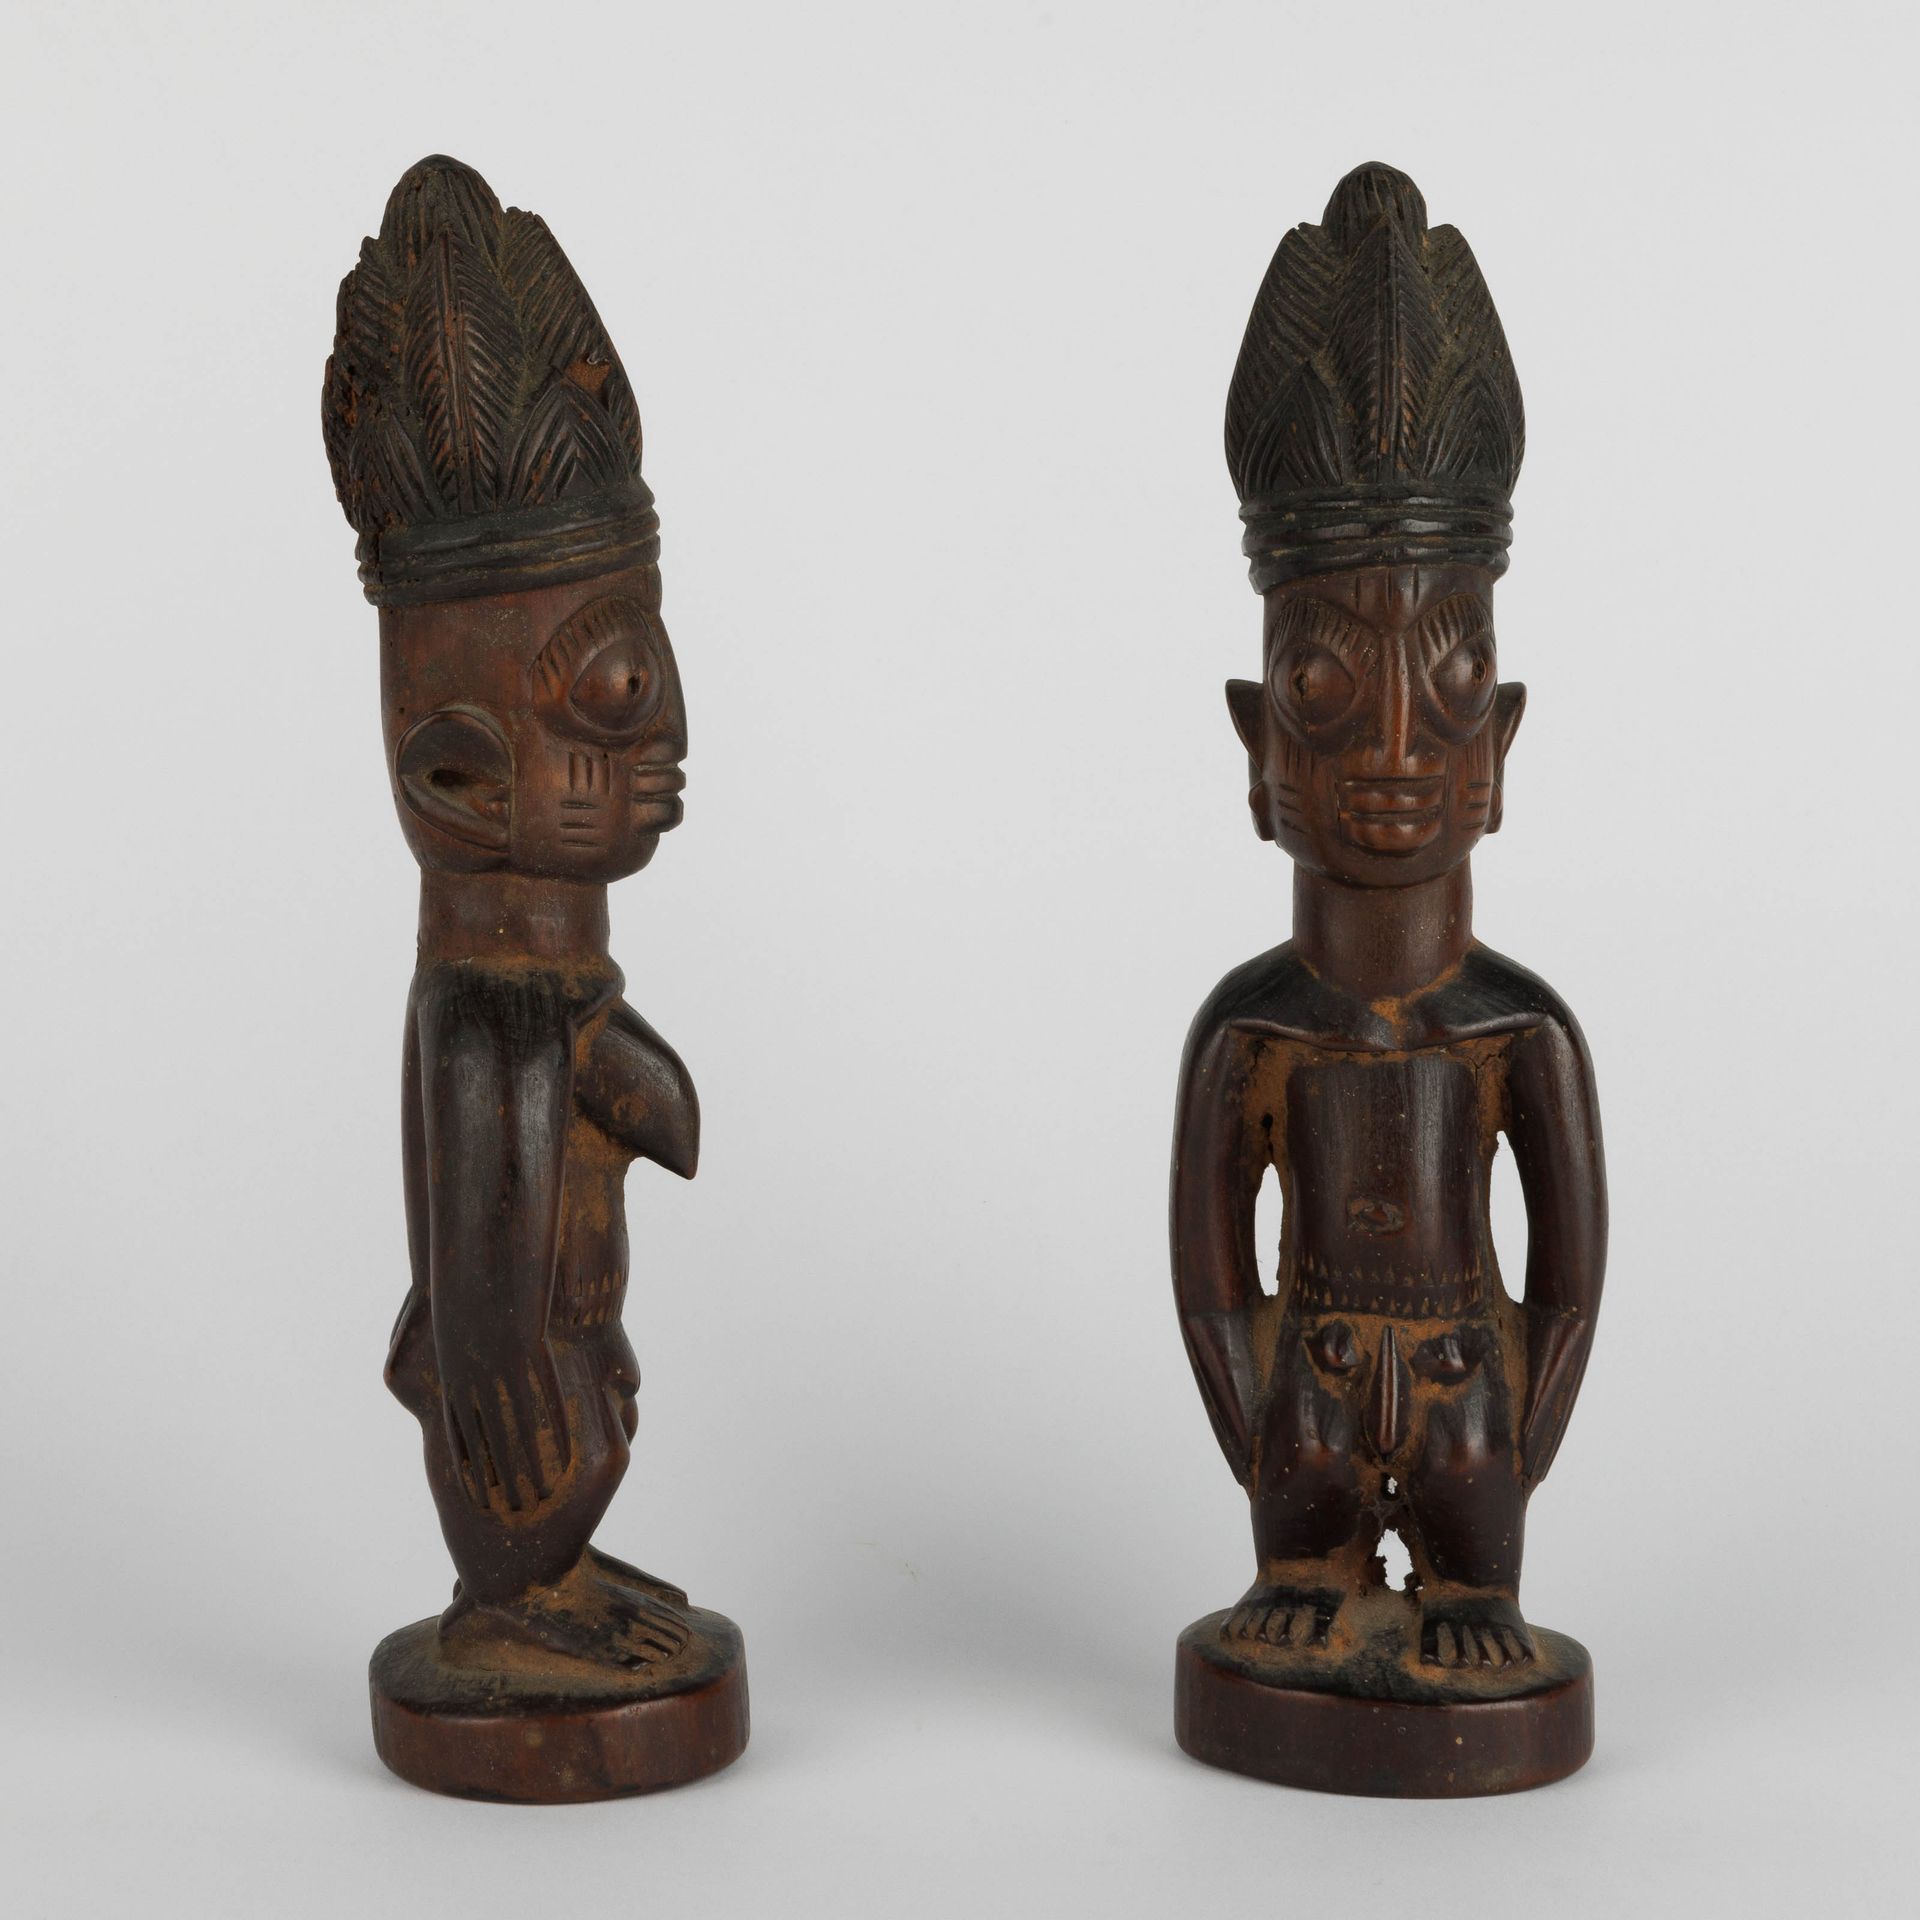 Paire de statues ibeji, Yoruba, Nigeria. Paar Ibeji, Yoruba, Nigeria.
Anfang 20.&hellip;